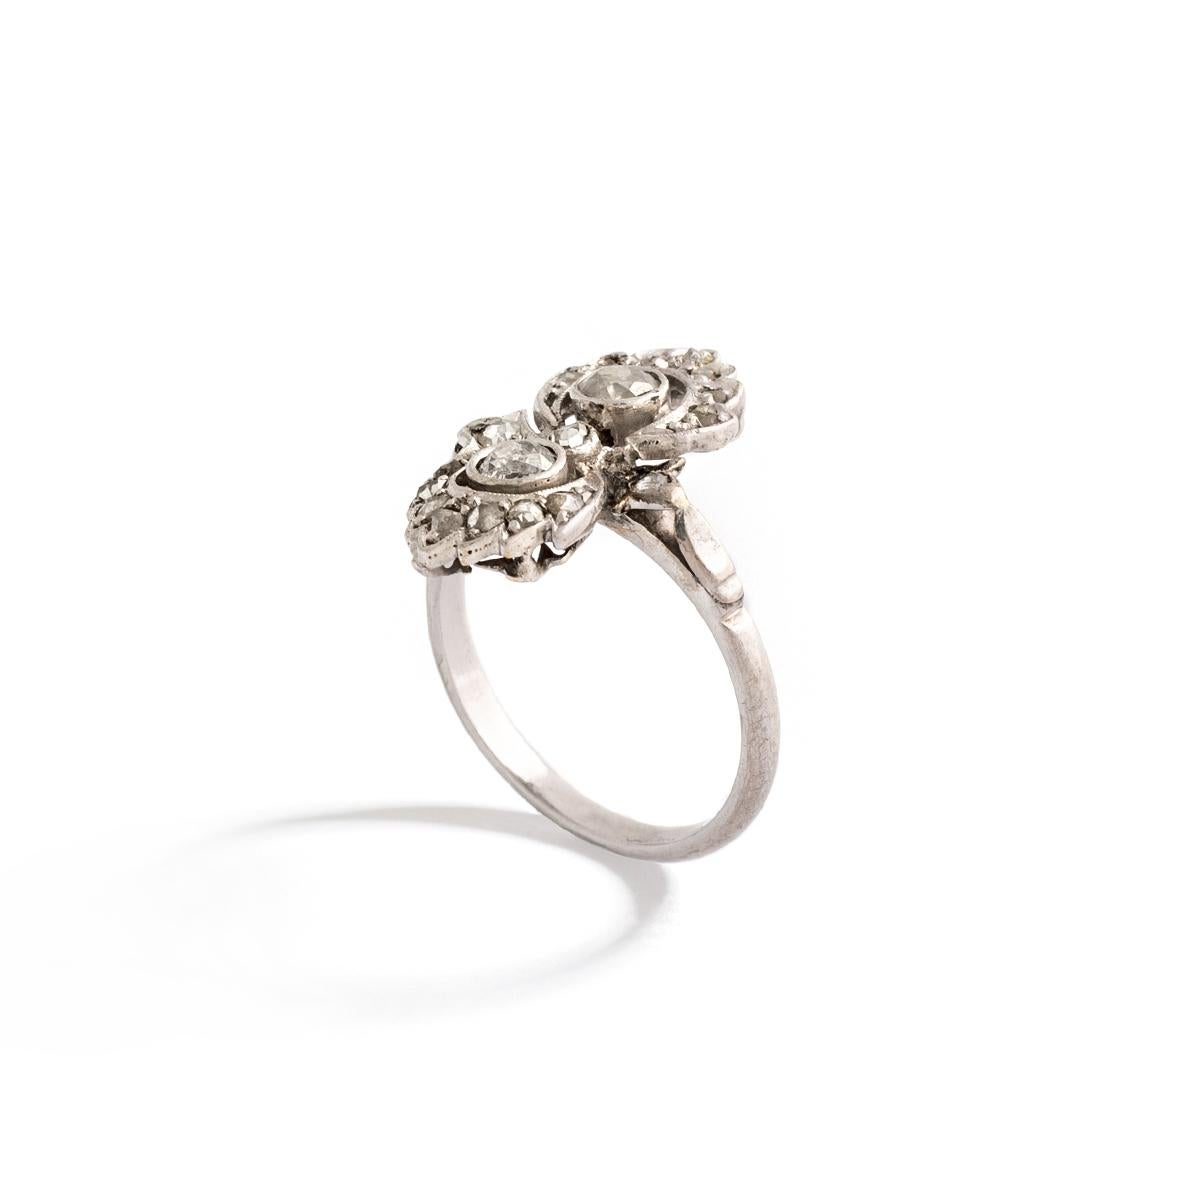 Ring aus Platin, besetzt mit Diamanten im Alt- und Rosenschliff.
Fingergröße: 49.
Bruttogewicht: 3,00 g.
